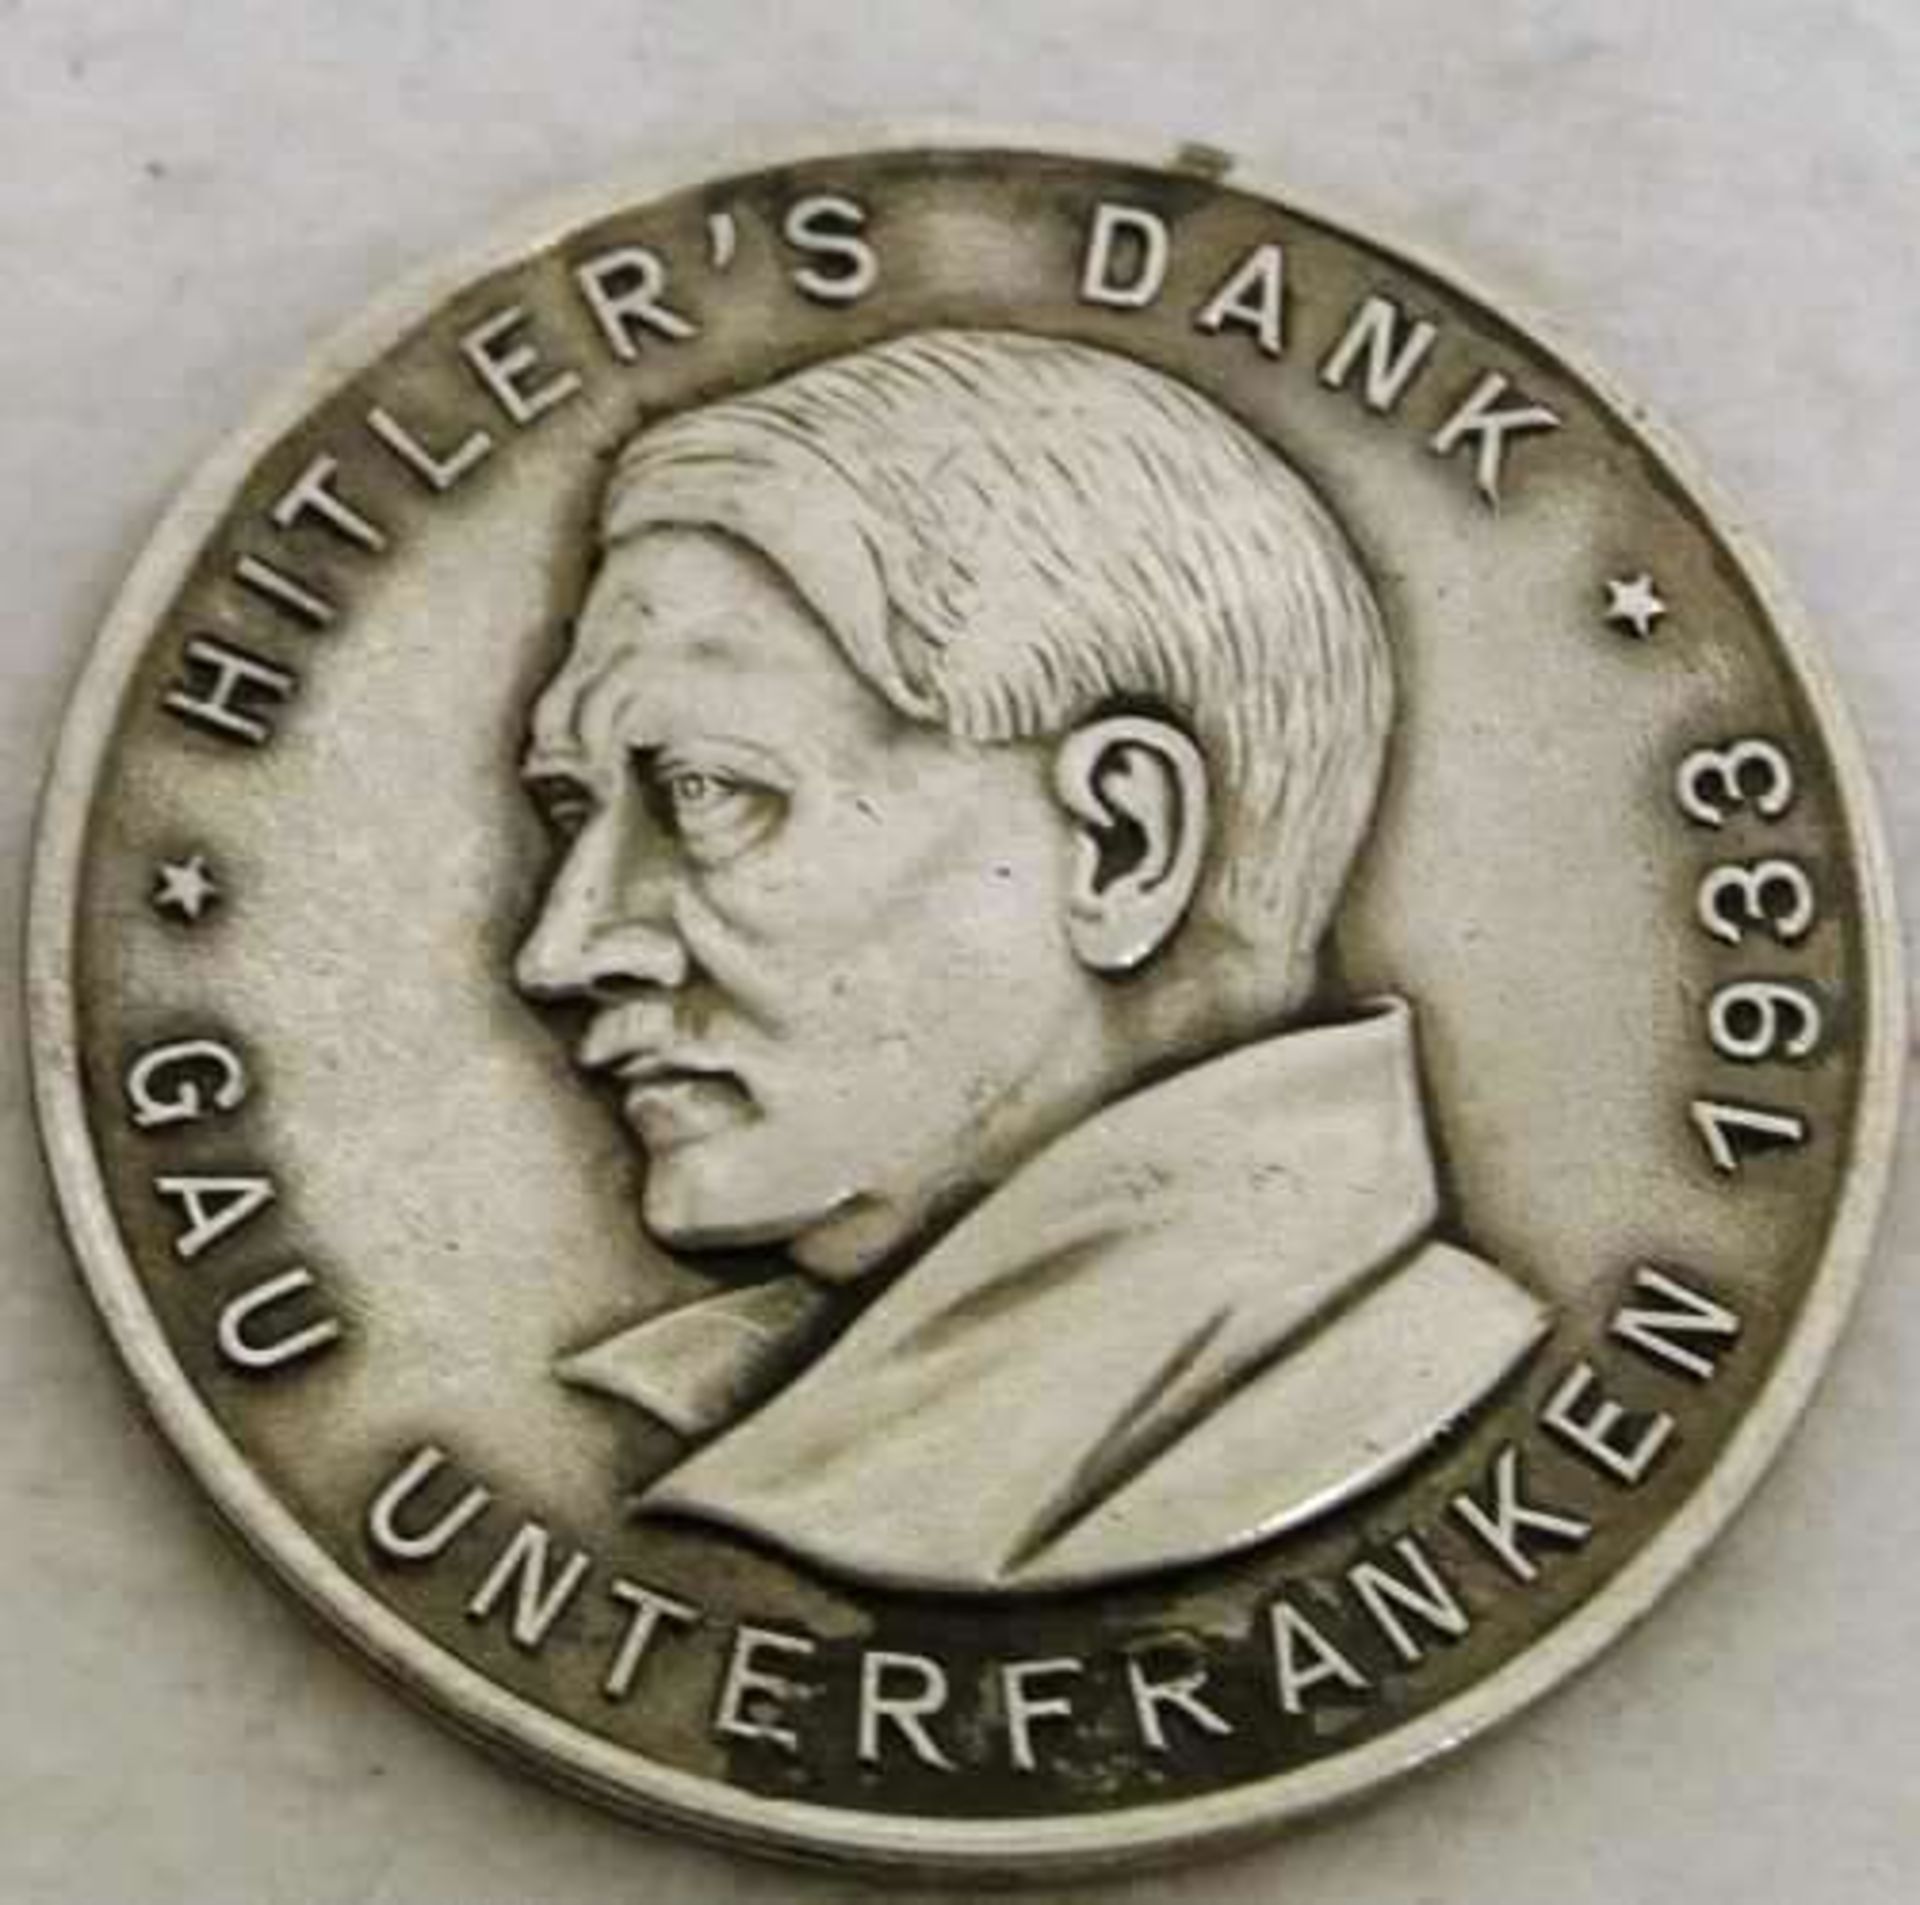 1 Brosche "Hitlers Dank Gau Unterfranken 1933" Hersteller Paulmann a Crone Lüdenscheid. Nadel